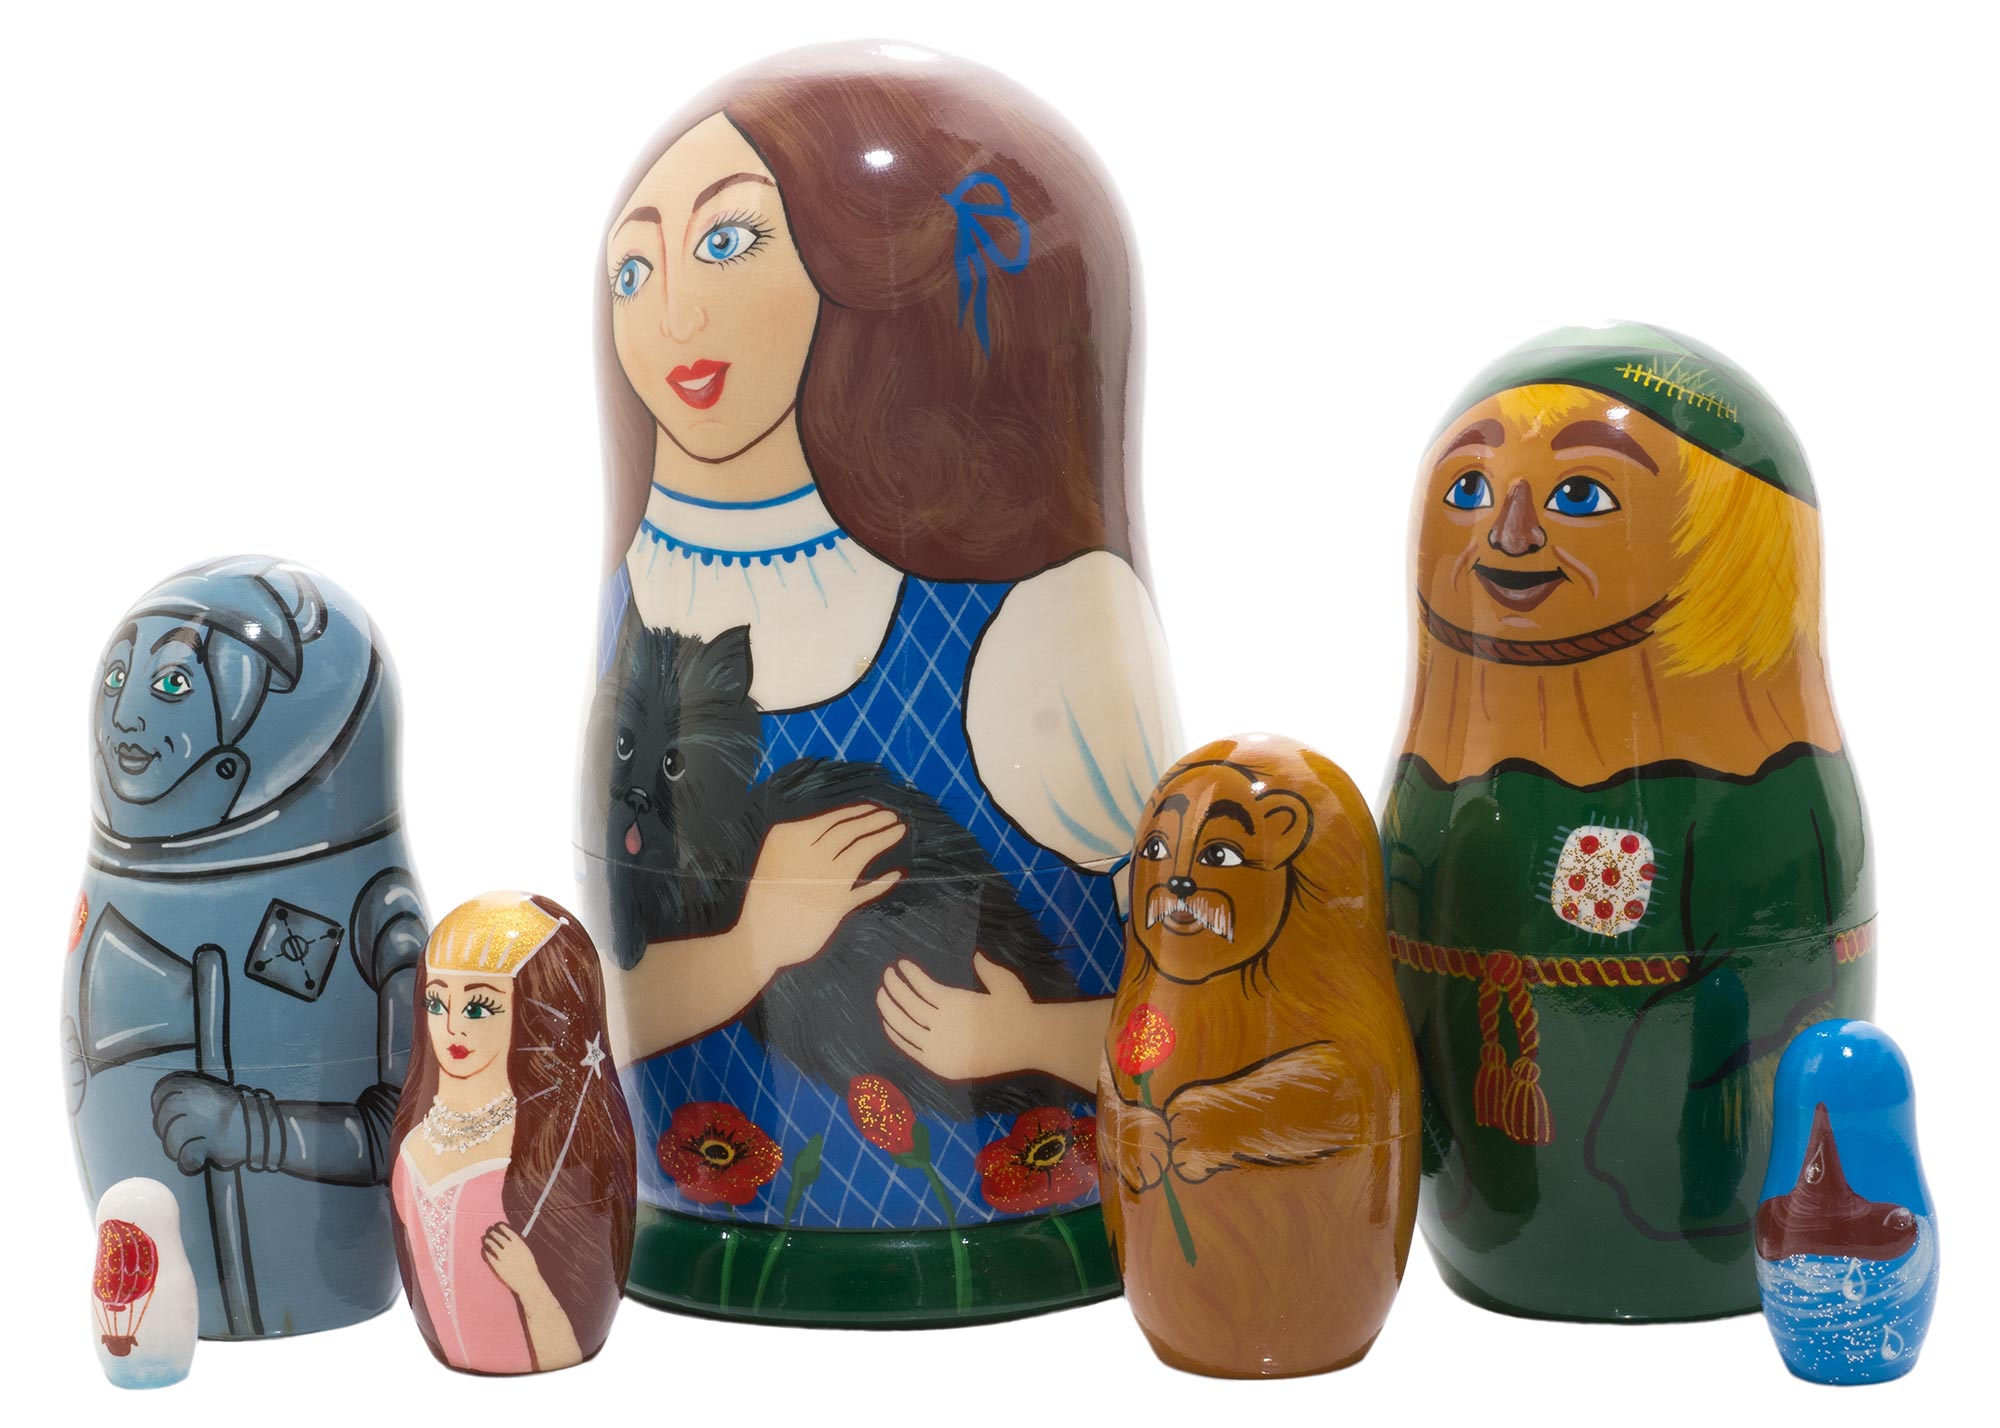 Wonderful Wizard of Oz Matryoshka Russian Nesting Dolls Matrioska 5 Pcs 